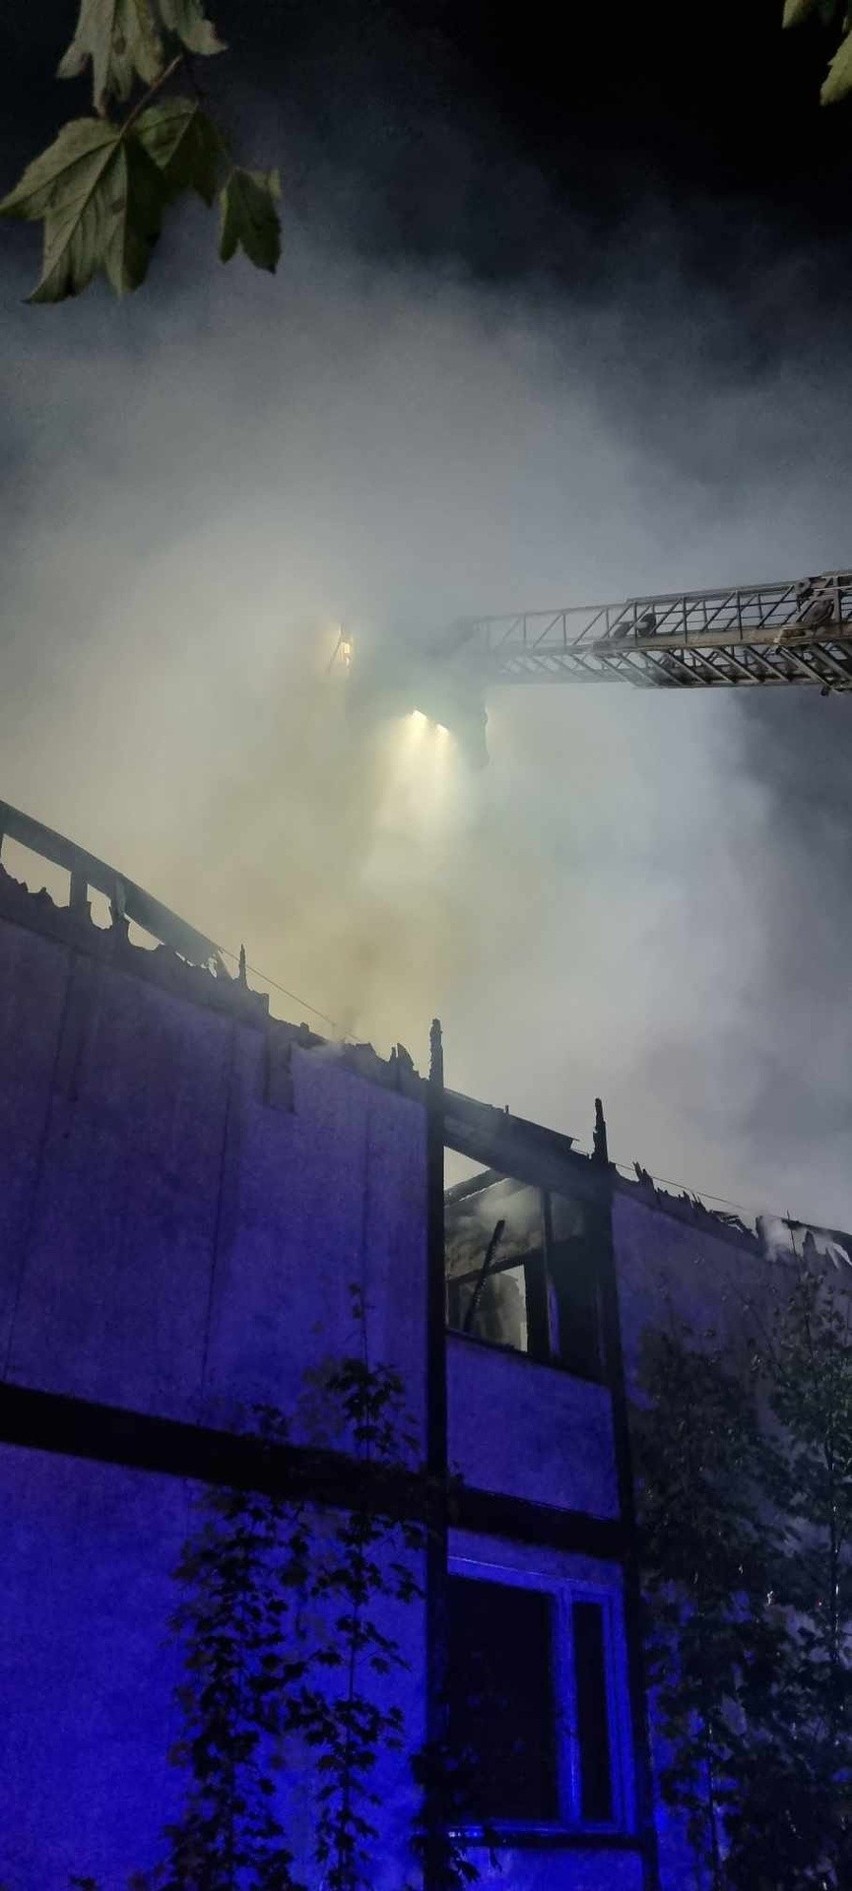 Przez całą noc płonął dawny hotel MSWiA w Tuszynie. Straty oszacowano na 300 tys. zł